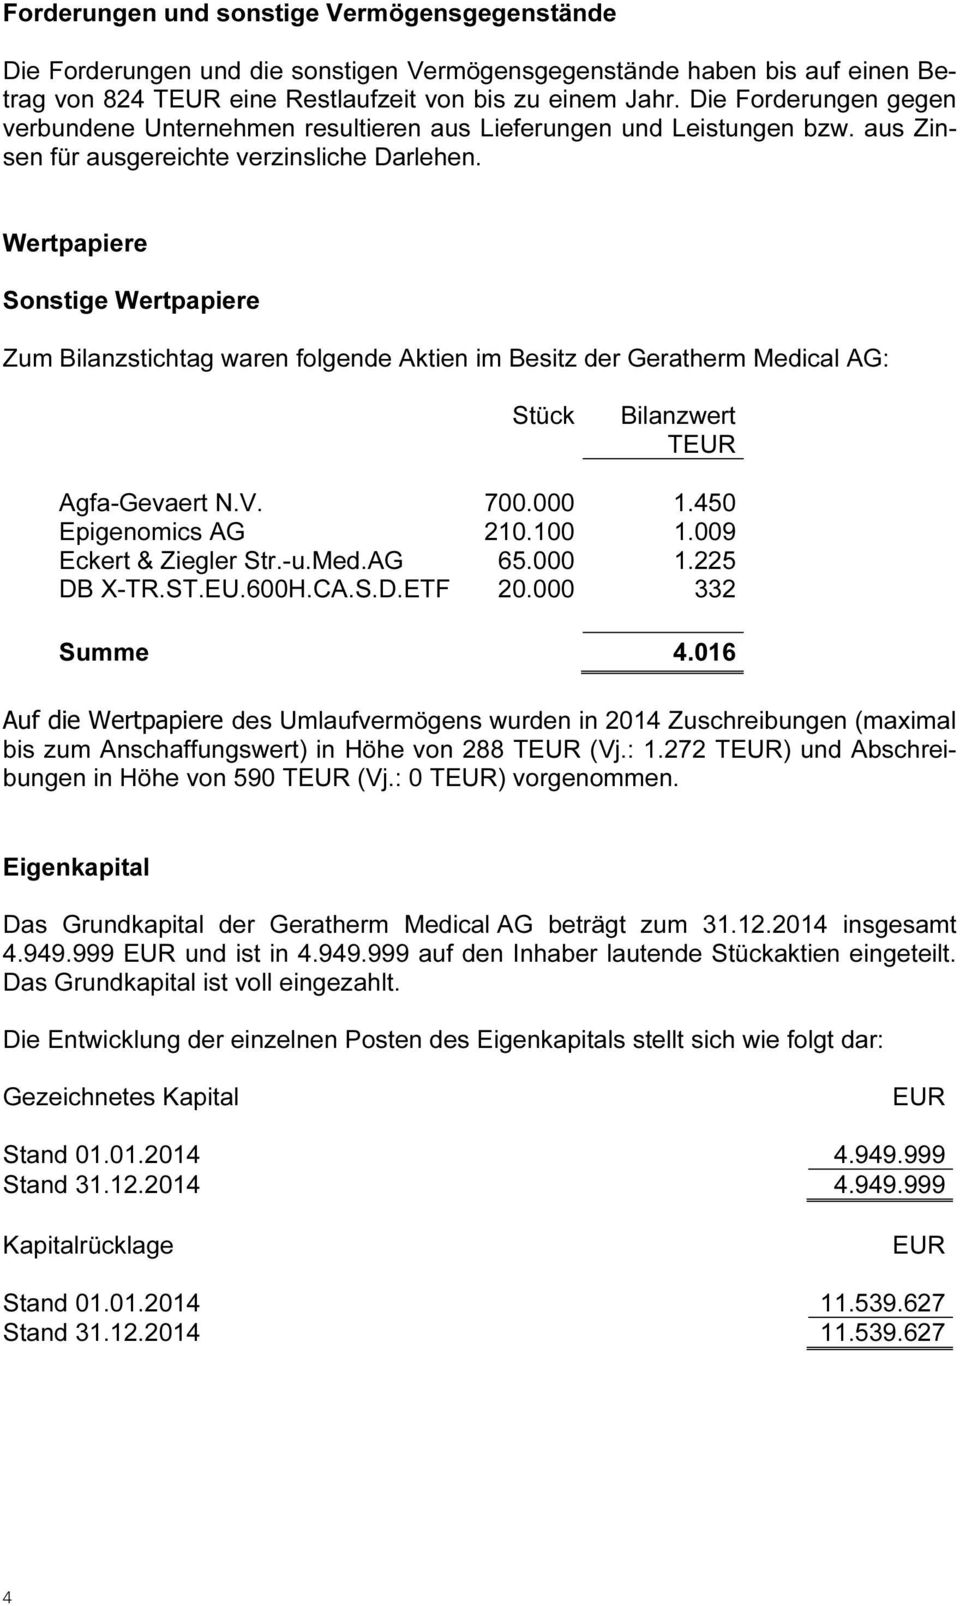 Wertpapiere Sonstige Wertpapiere Zum Bilanzstichtag waren folgende Aktien im Besitz der Geratherm Medical AG: Stück Bilanzwert TEUR Agfa-Gevaert N.V. 700.000 1.450 Epigenomics AG 210.100 1.